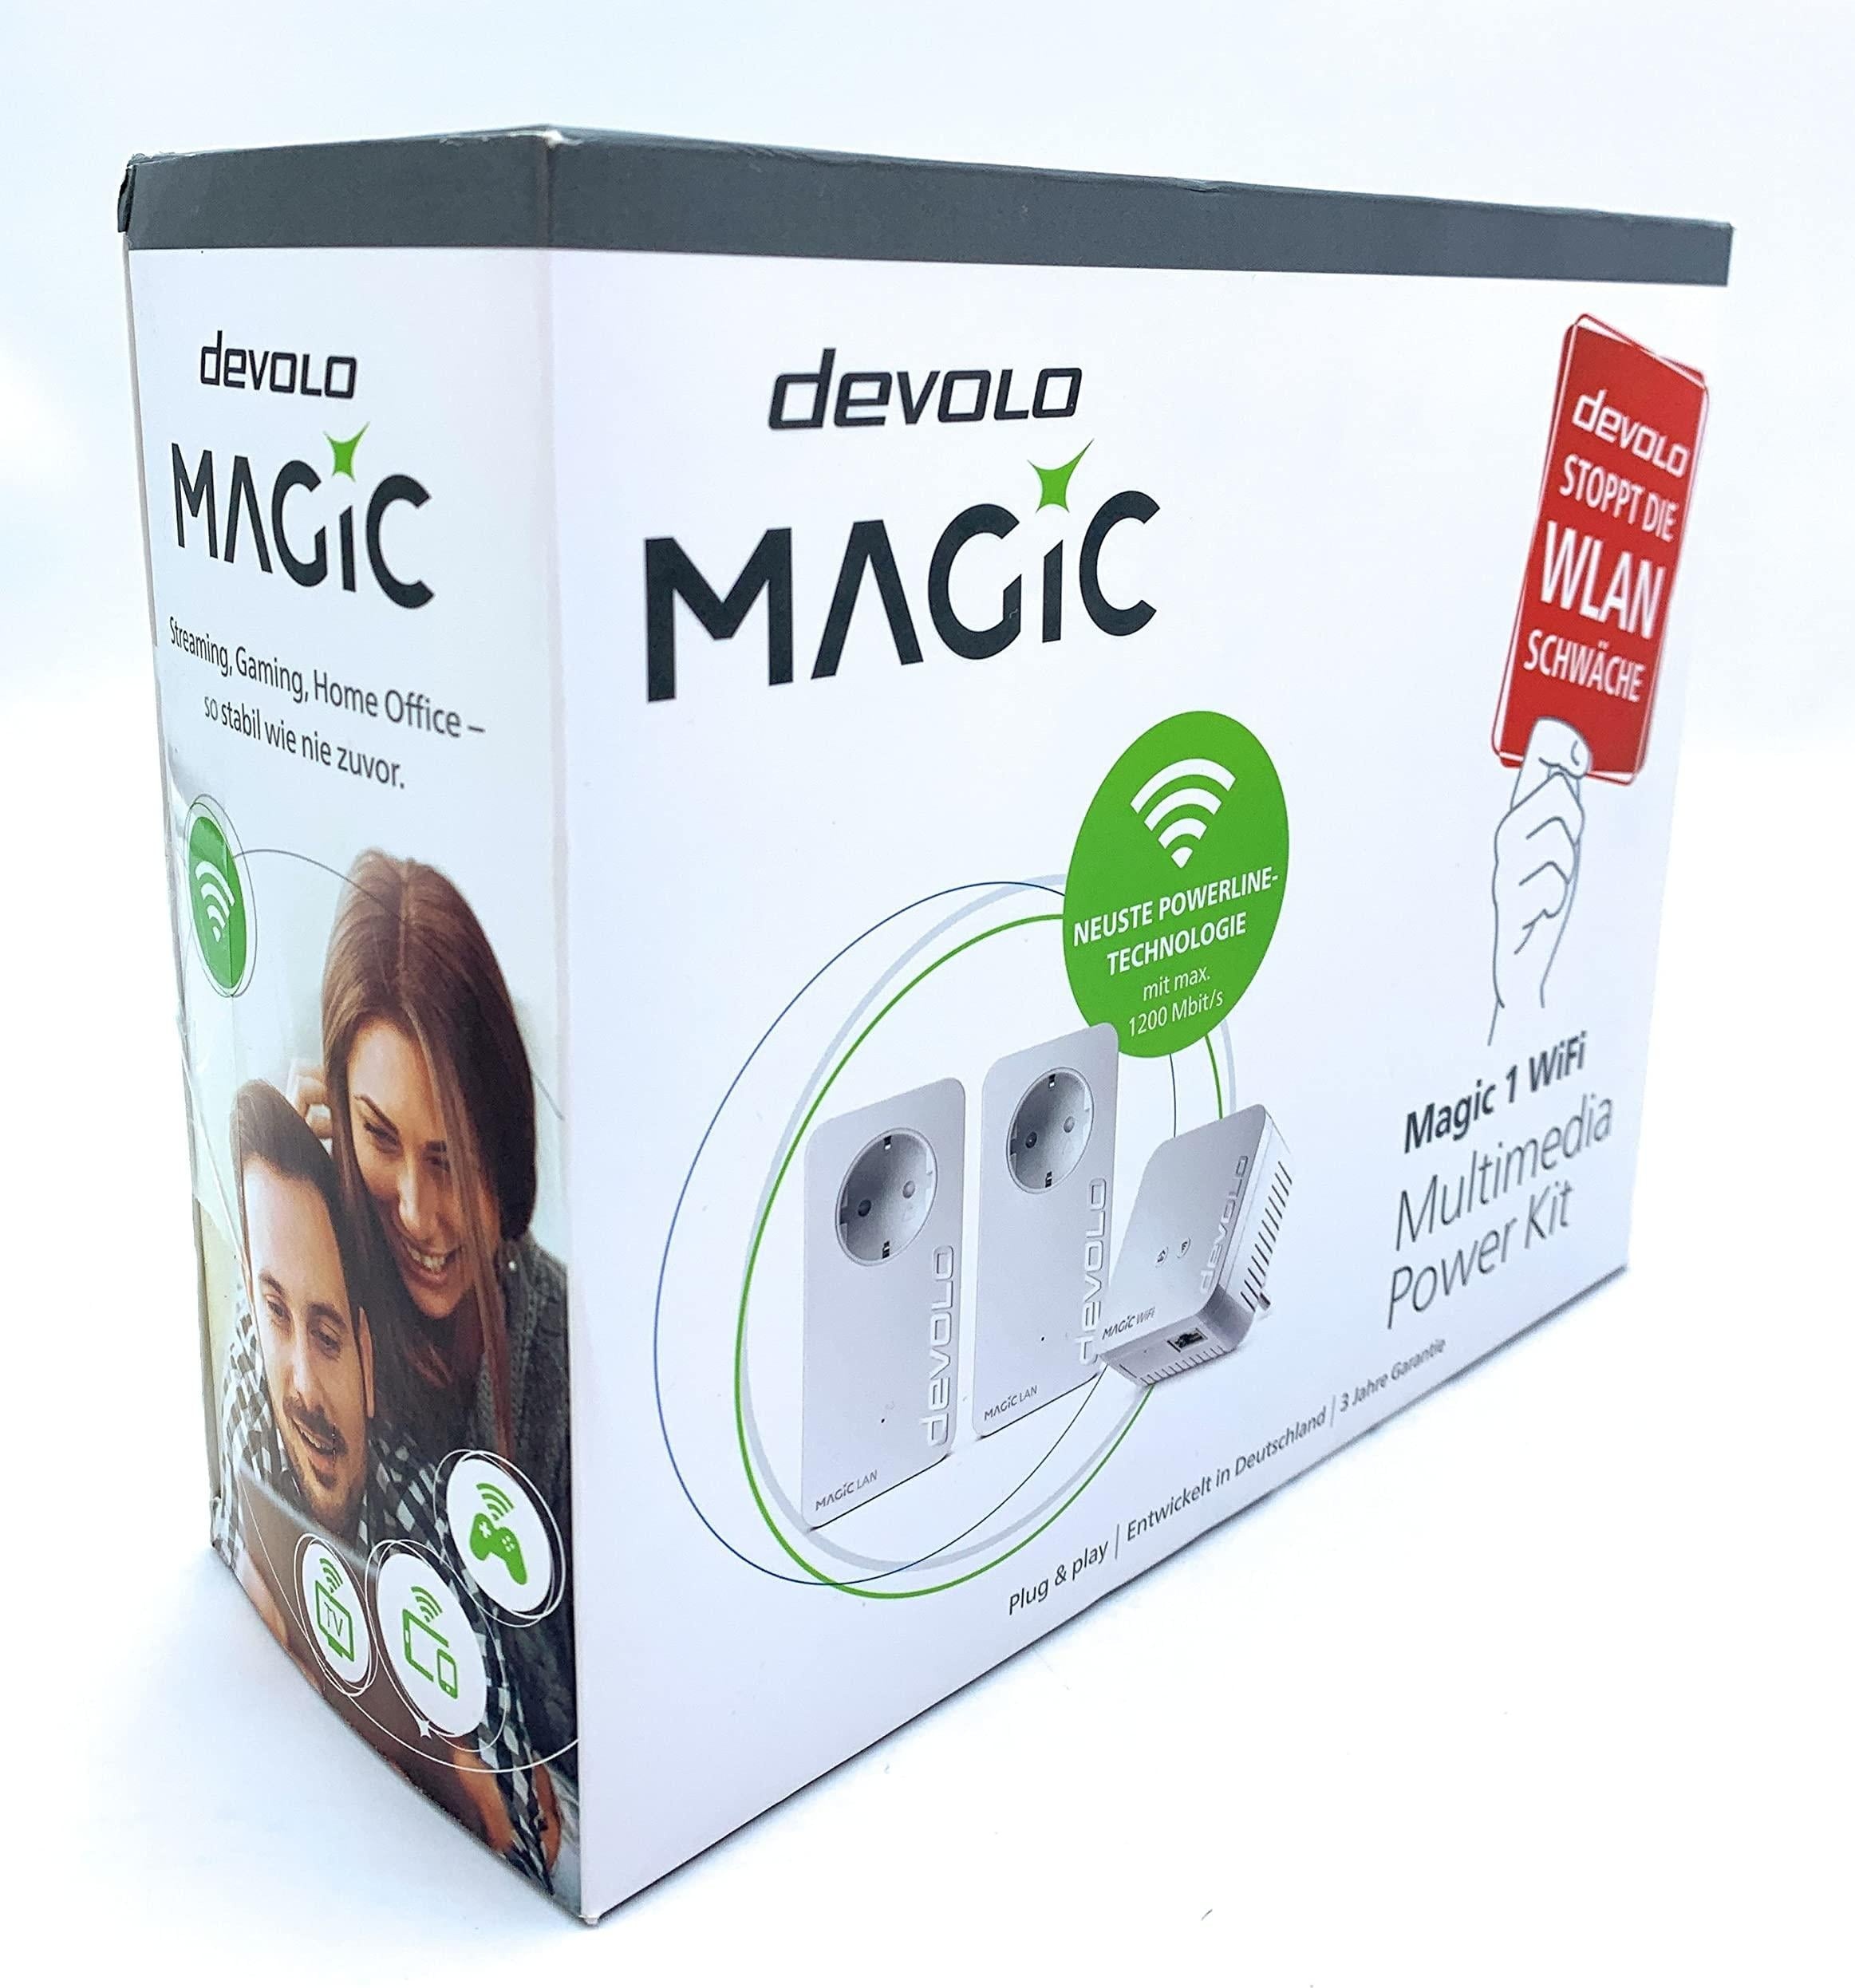 Devolo Magic 1 WiFi Multimedia Power Kit (1200 Mbit/s), Powerline